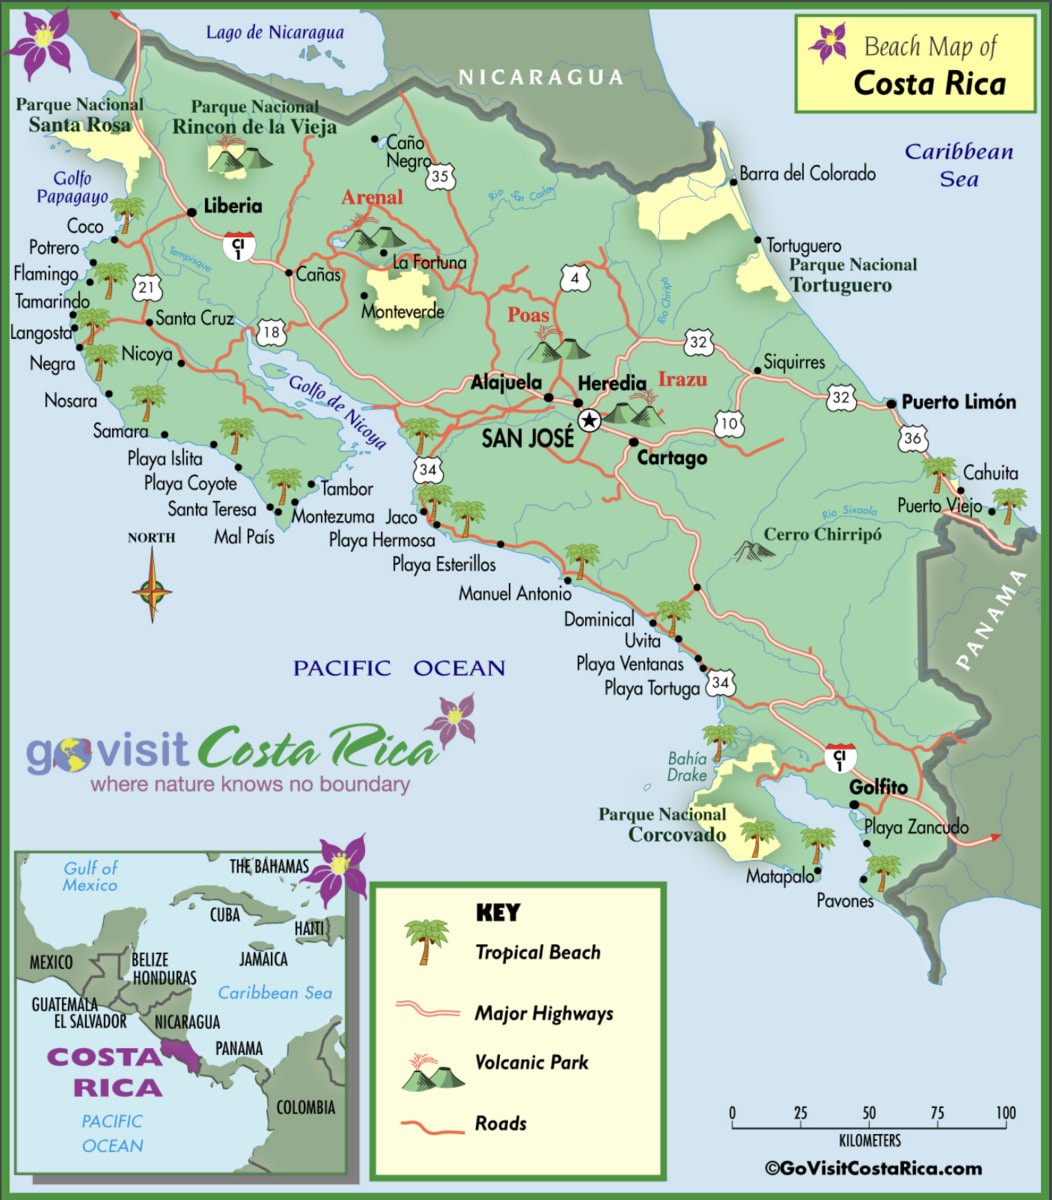 Costa Rica beach map